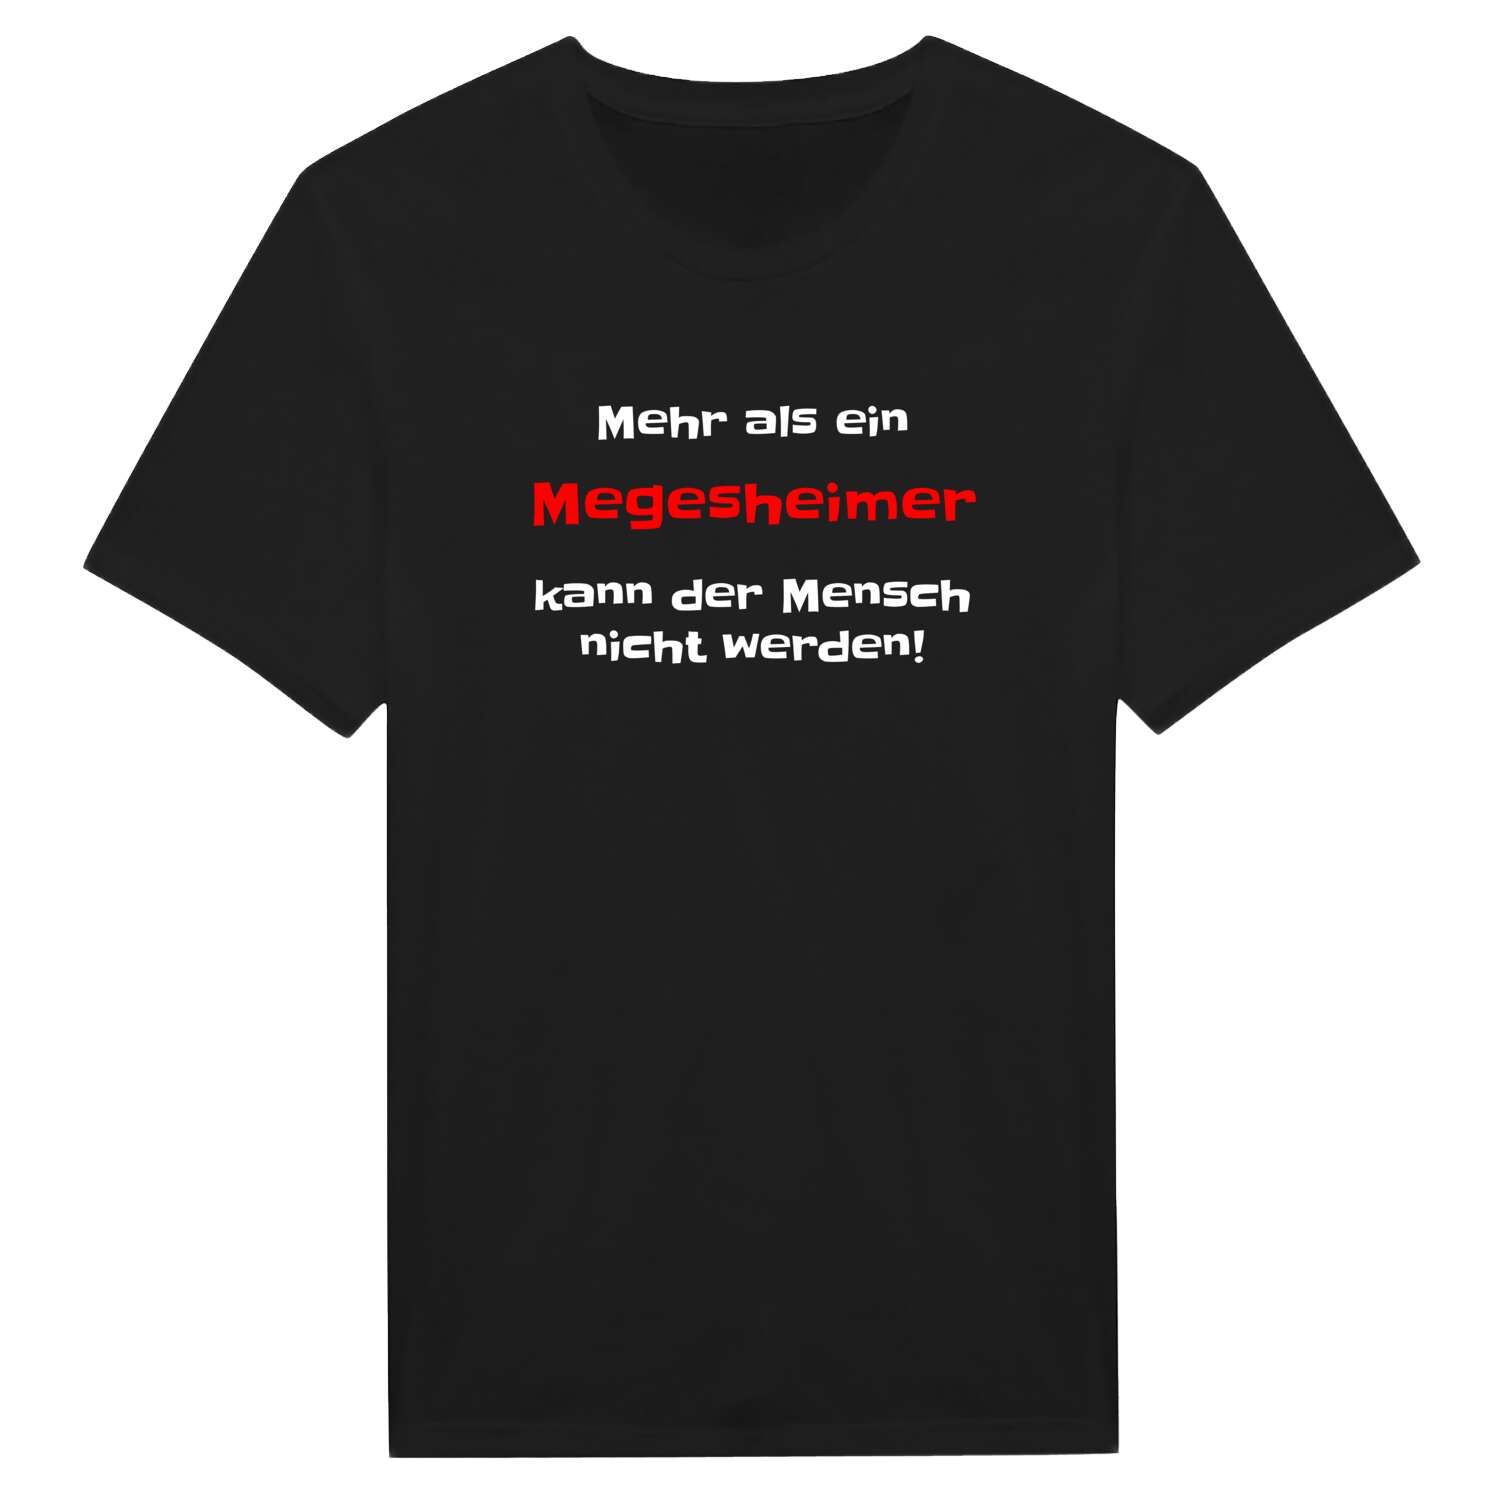 Megesheim T-Shirt »Mehr als ein«